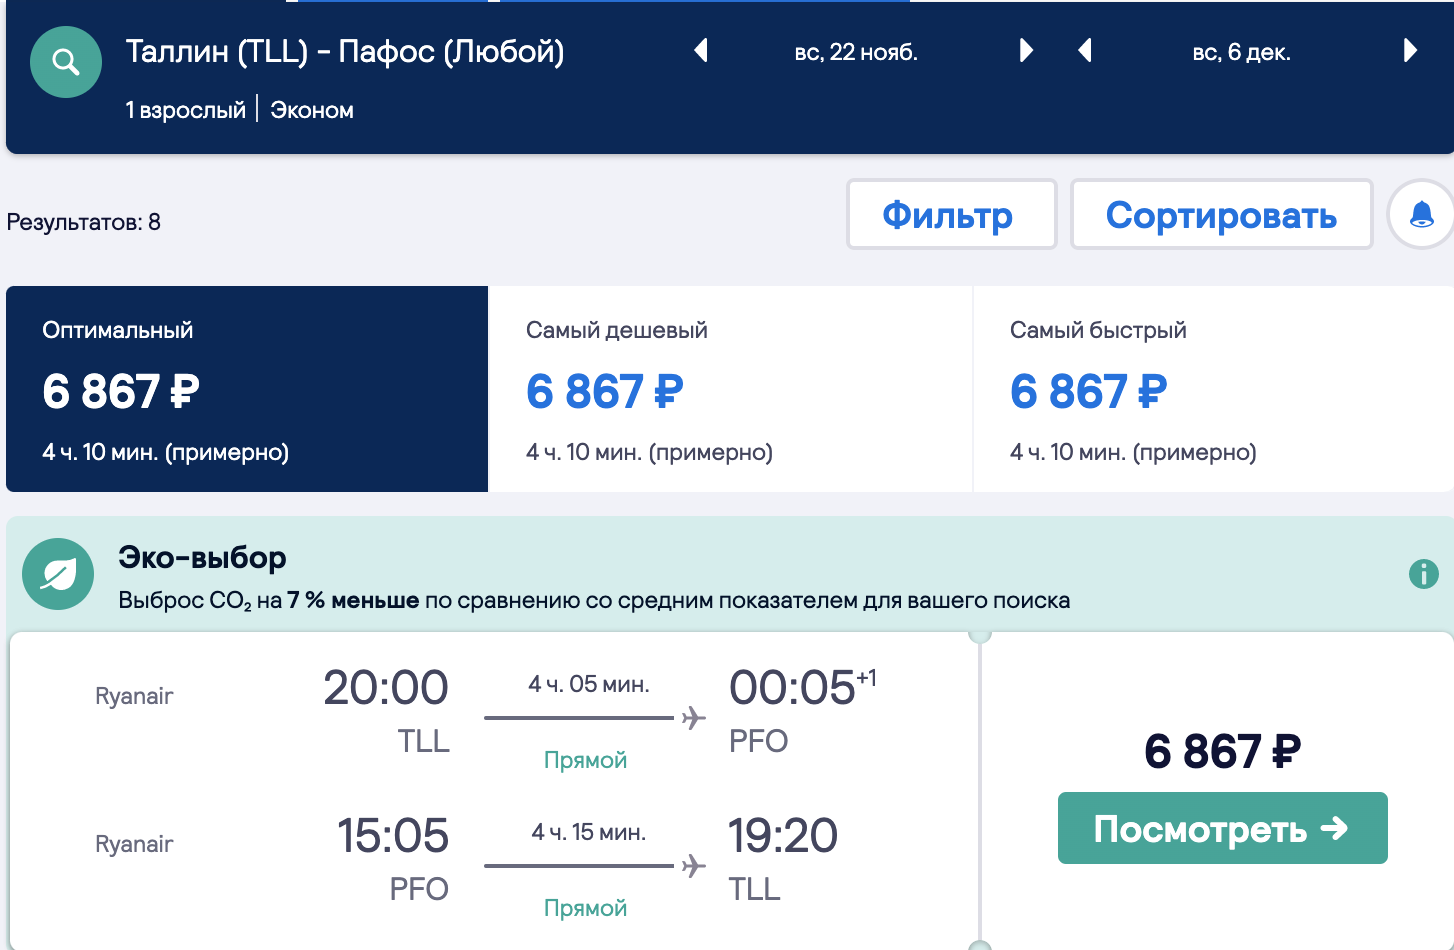 Авиабилеты ош красноярск прямой рейс цена билета